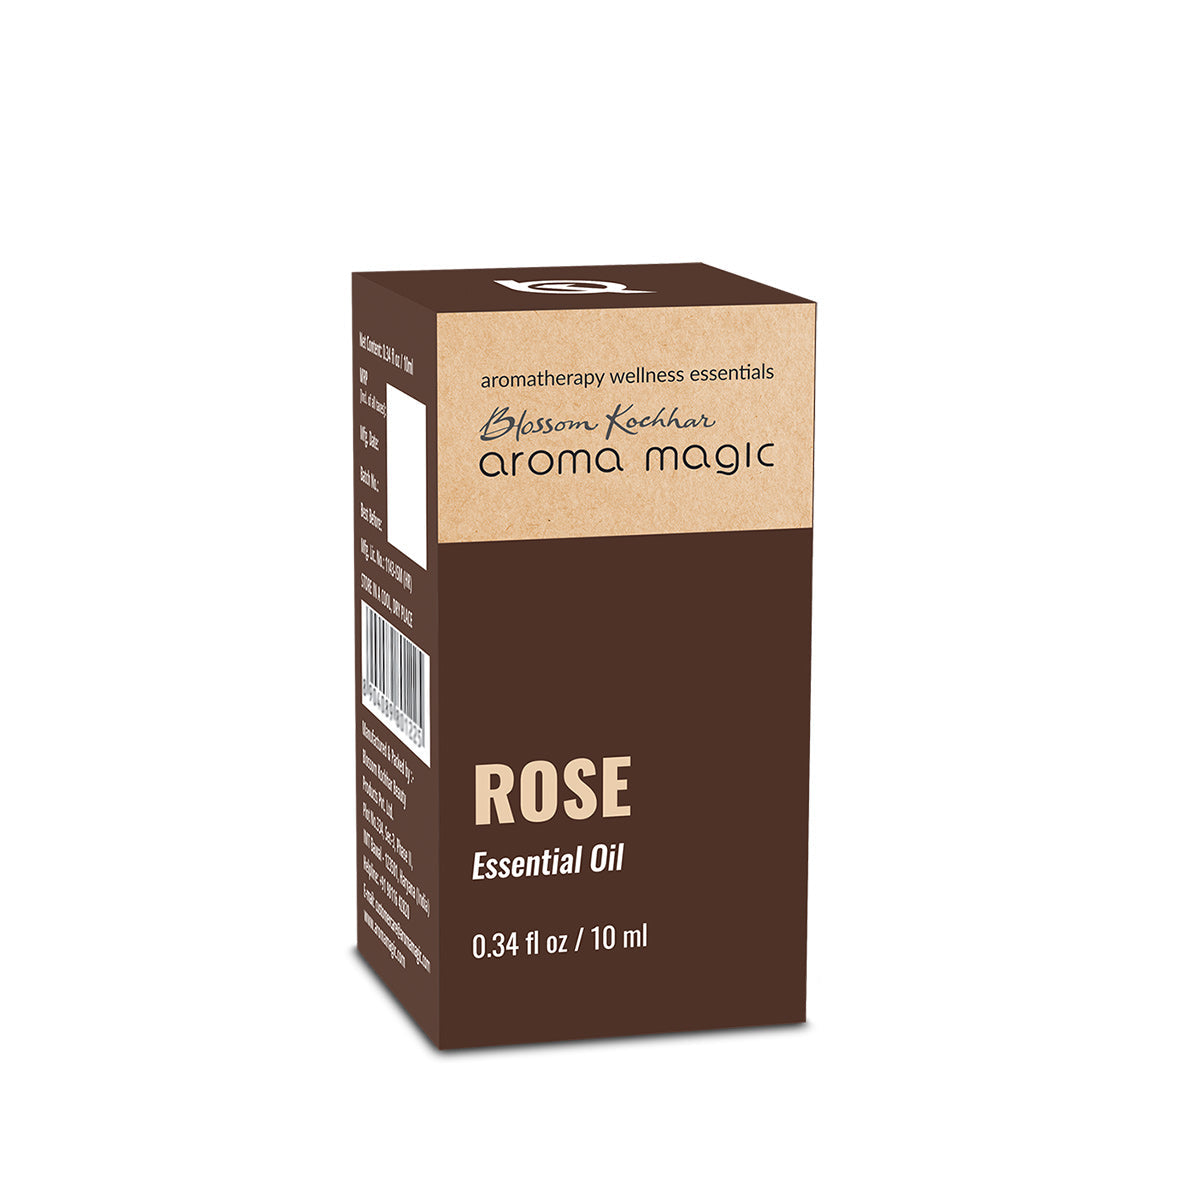 Rose Essential Oil - Aroma Magic